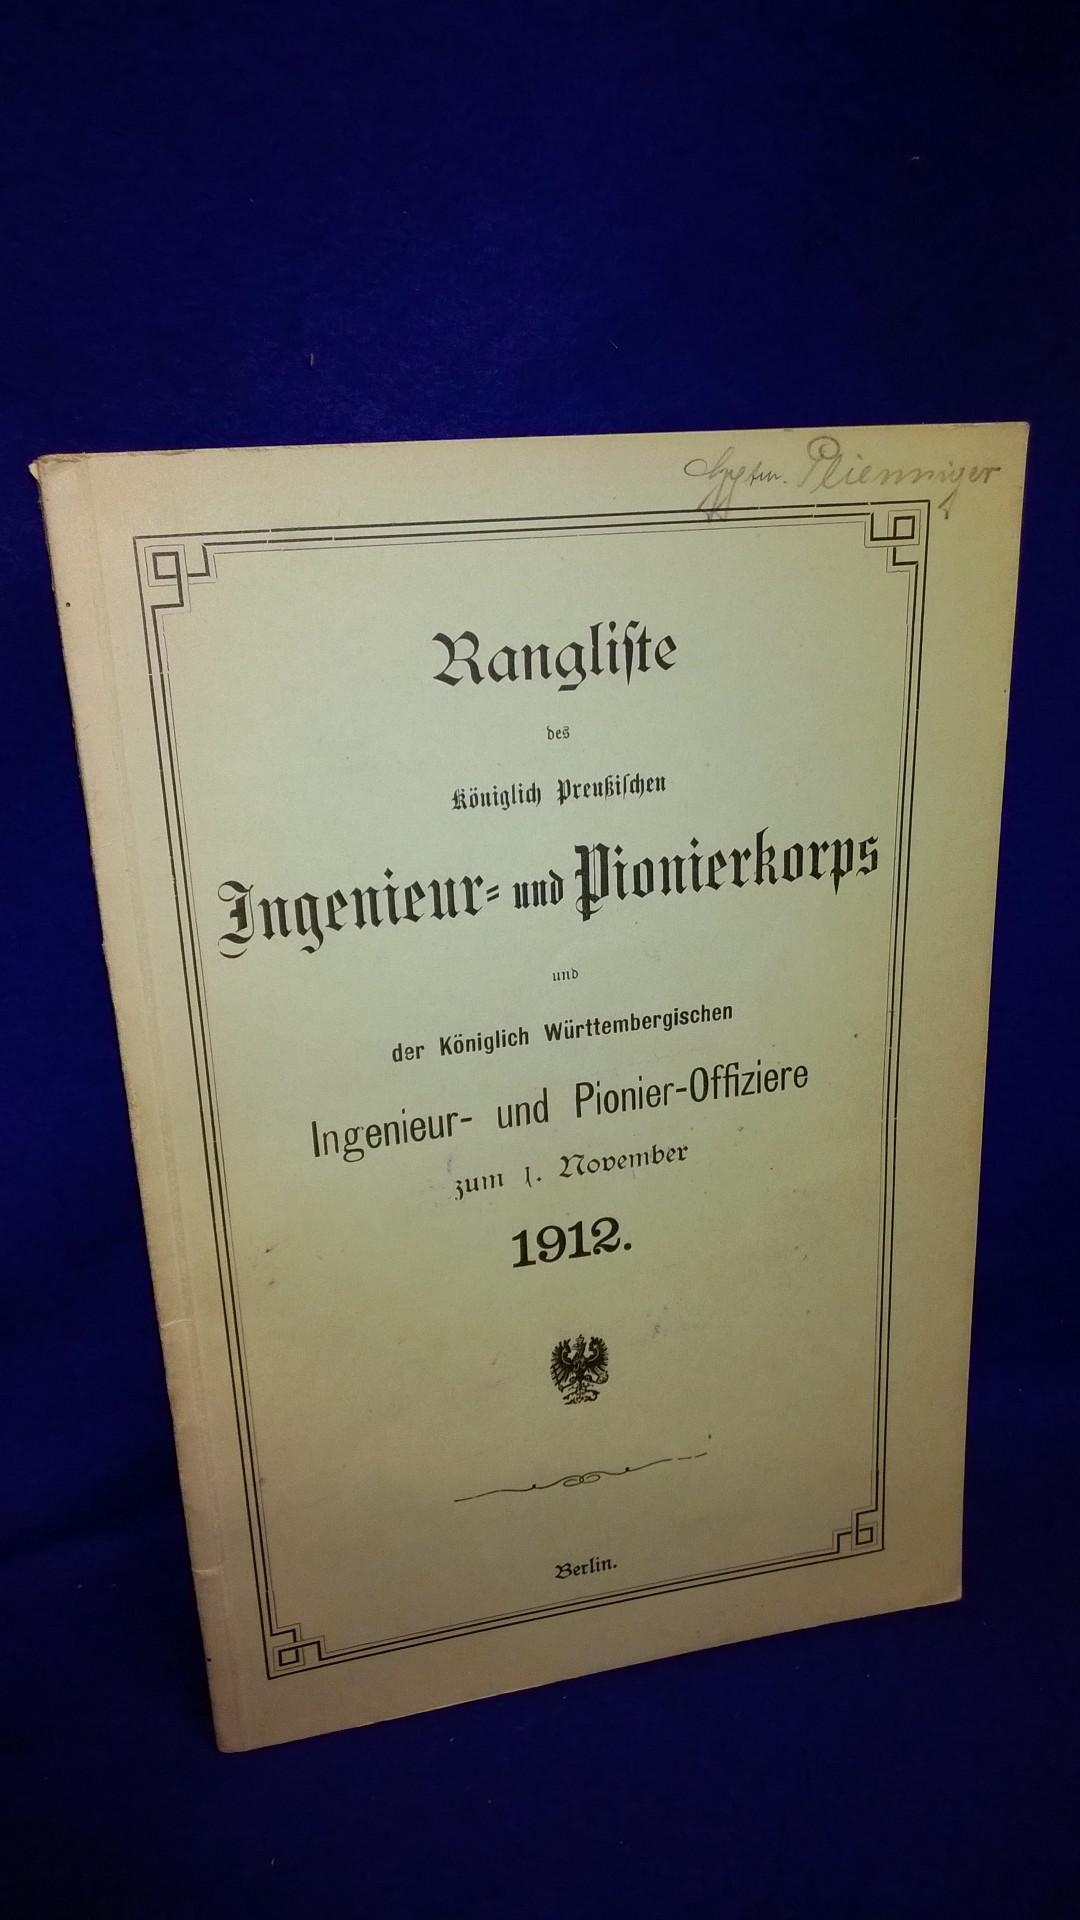 Rangliste des Königlich Preußischen Ingenieur- und Pionierkorps und der Königlich Württembergischen Ingenieur- und Pionier-Offiziere zum 1.November 1912.